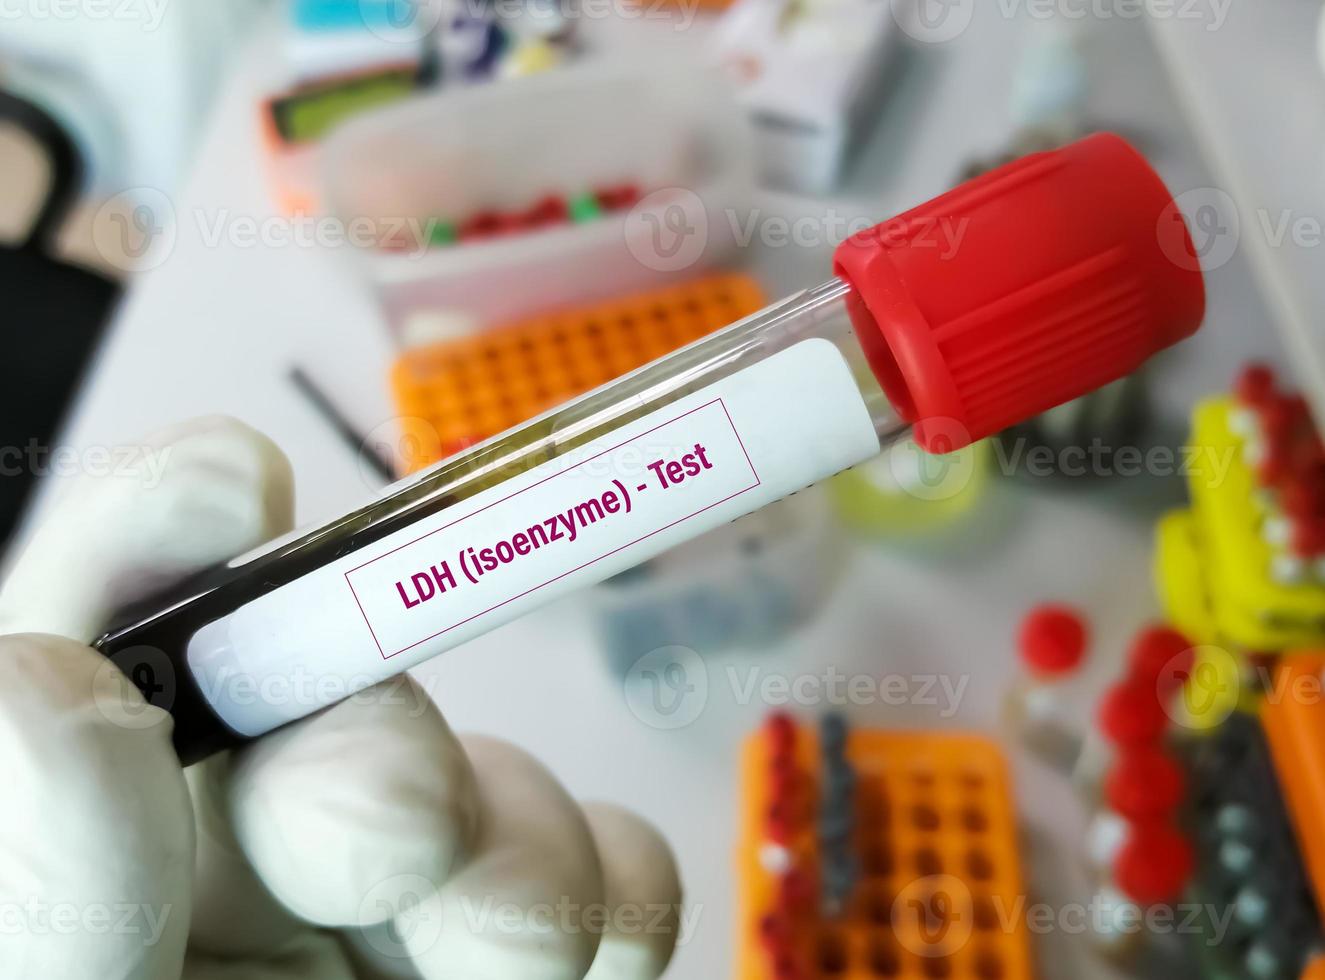 blodprov för ldh - isoenzymtest. aktatdehydrogenas, diagnos för cellulär förstörelse eller vävnadsskada. foto